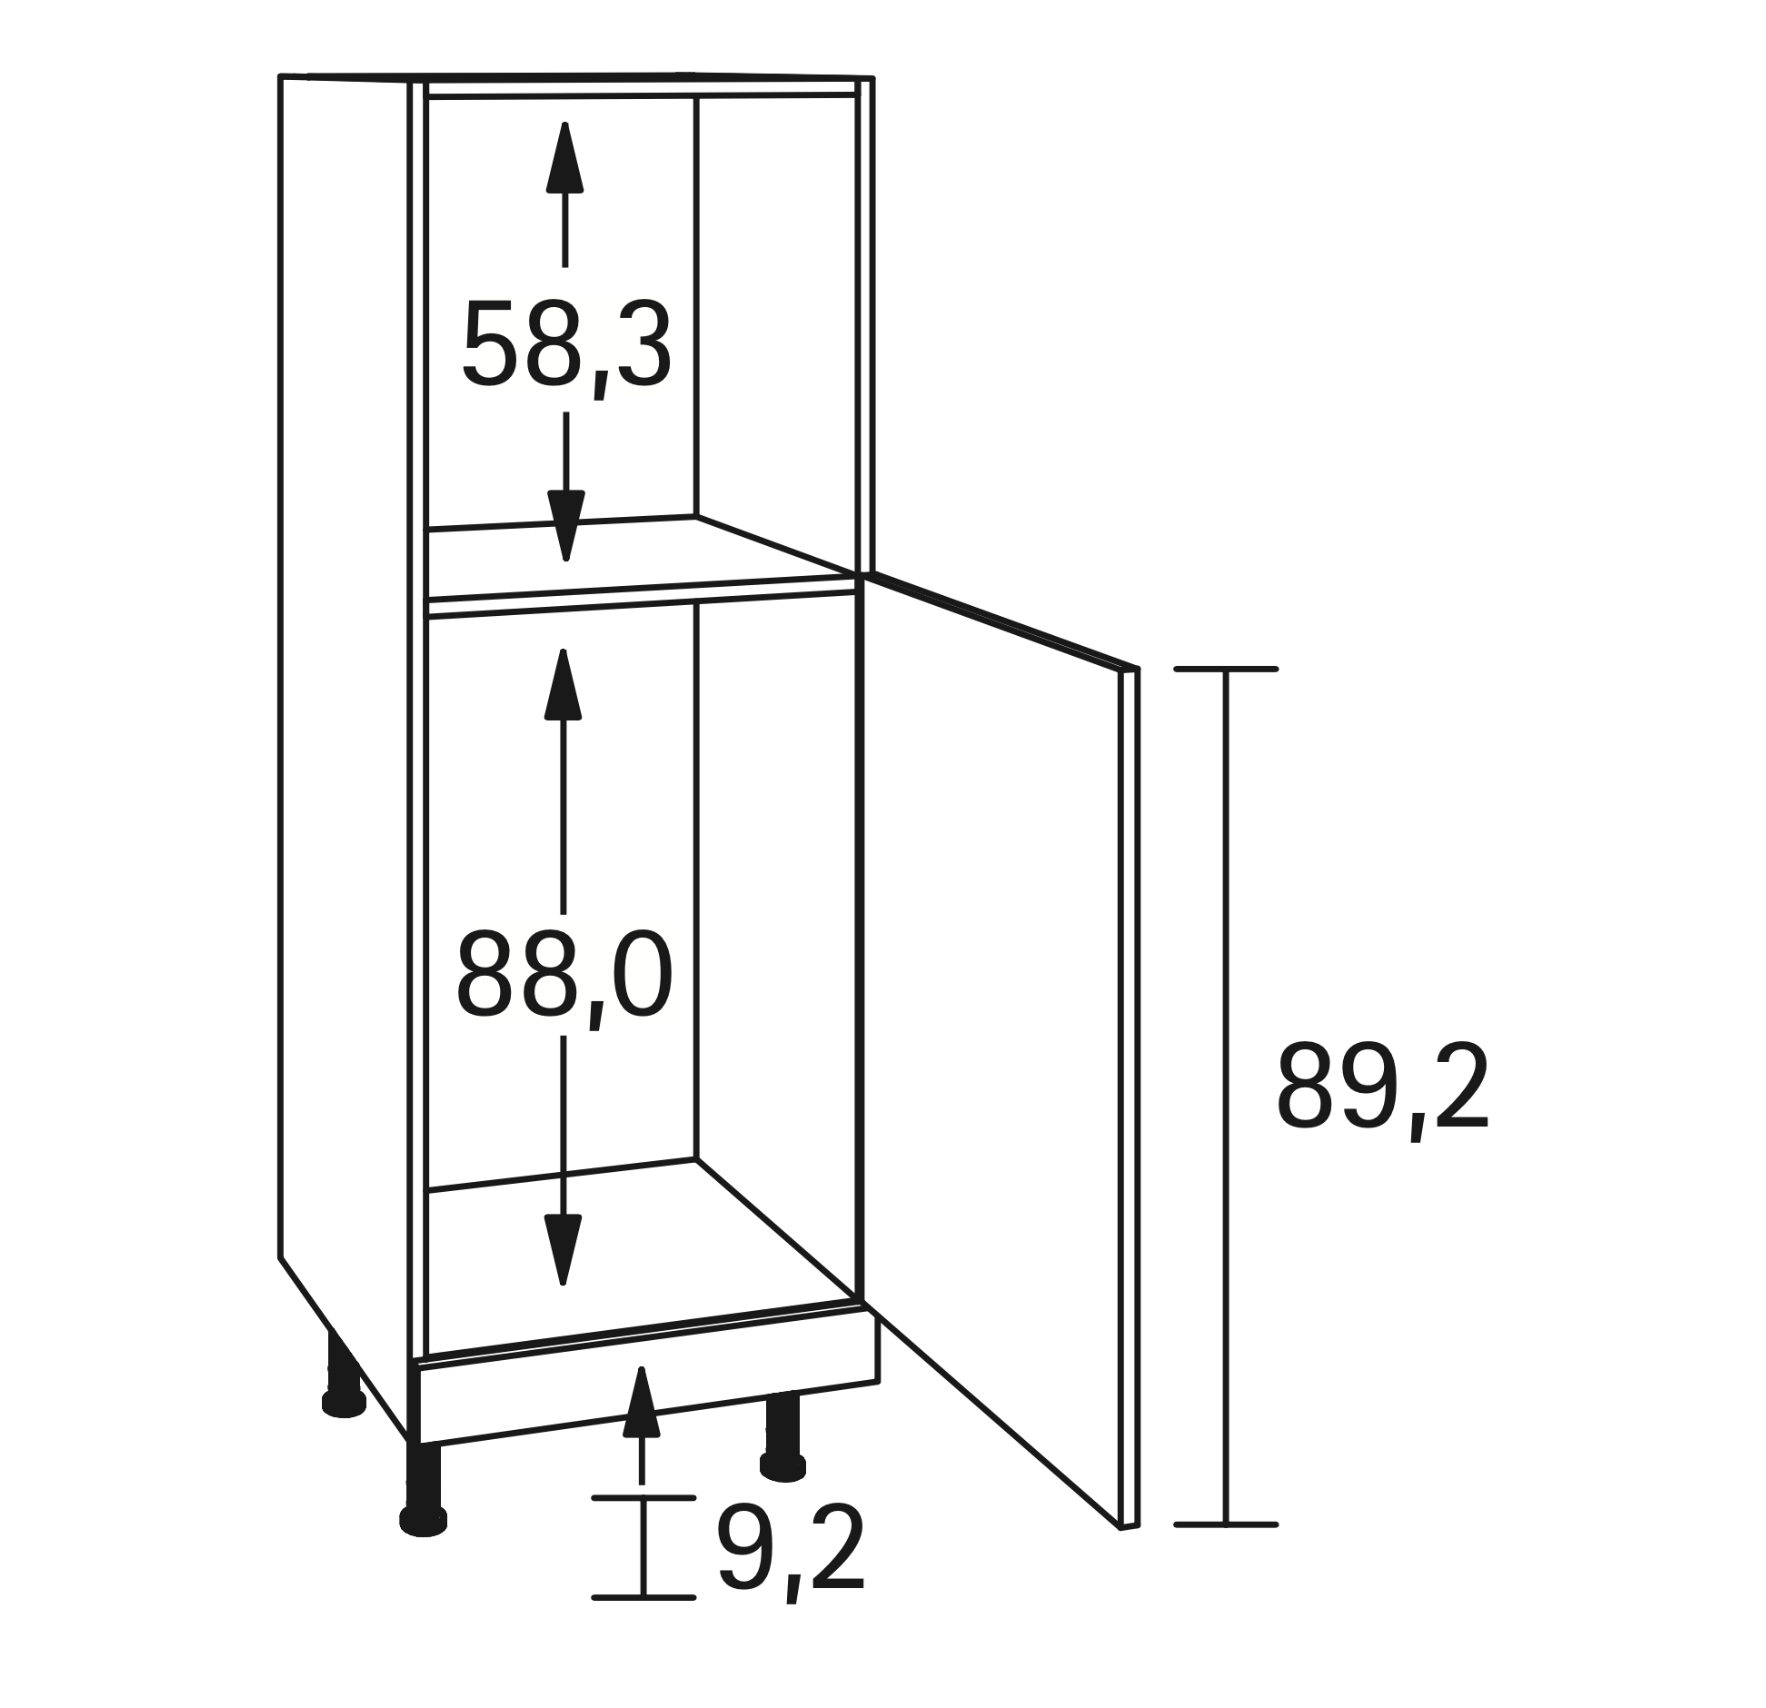 Midischrank für Backofen und cm 176,6 Höhe - Kühlschrank integrierbaren